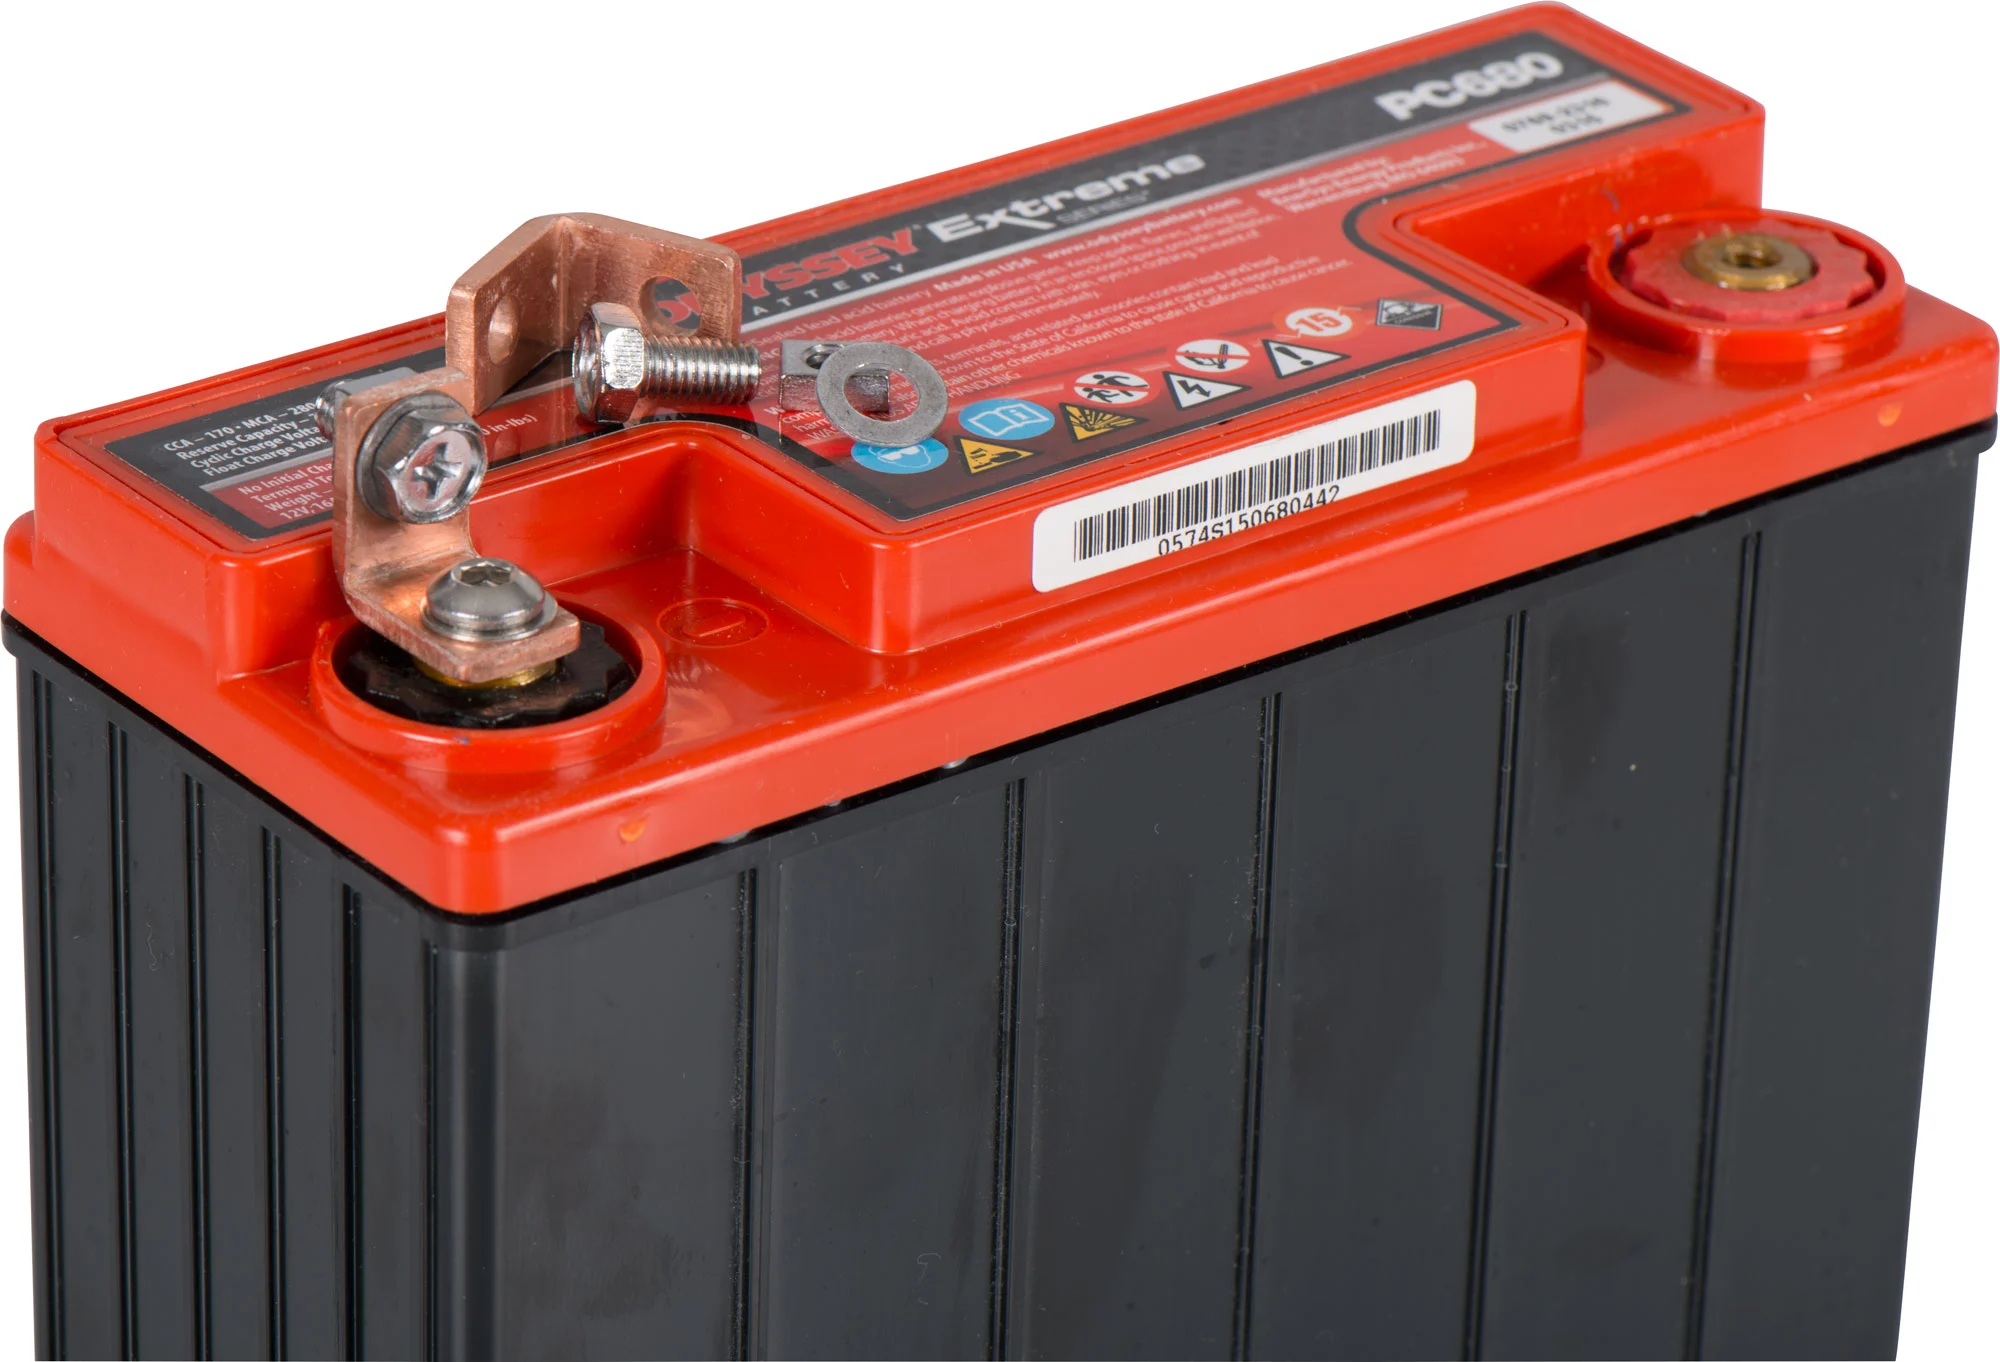 Odyssey Battery BATTERIEPOL-ADAPTER PAAR ODYSSEY HAWKER BATTERIEN